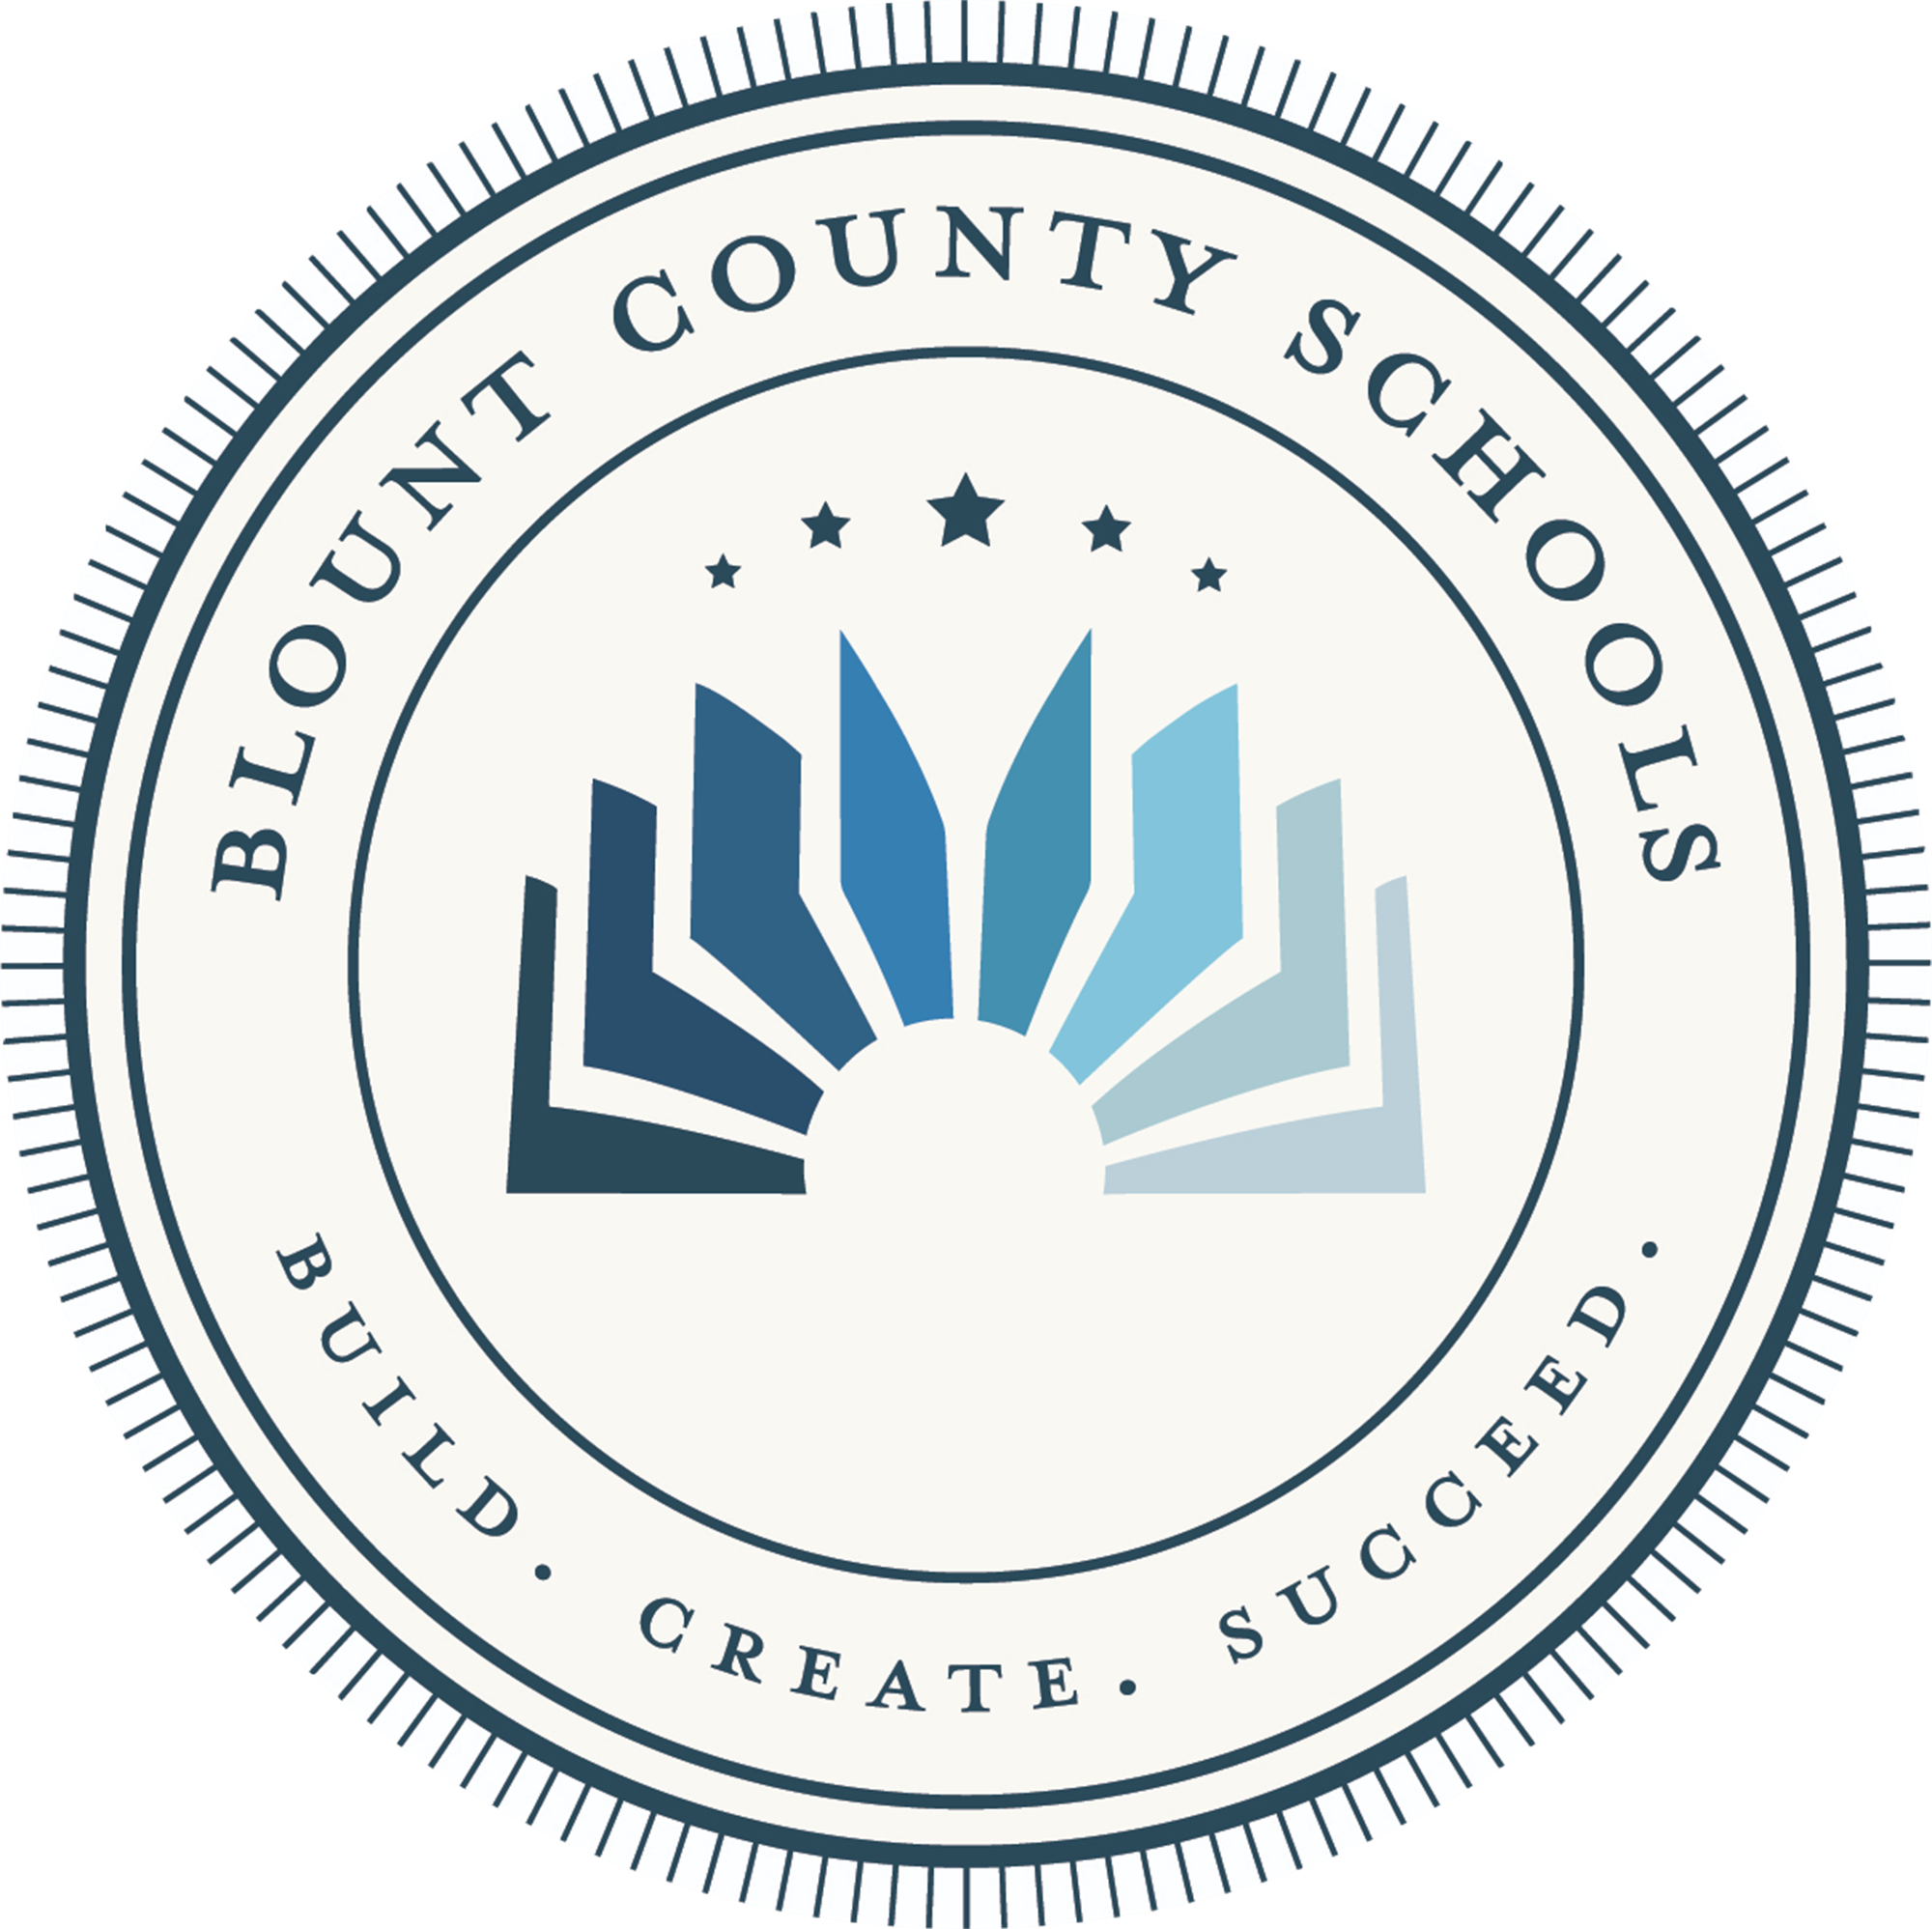 Blount County Schools